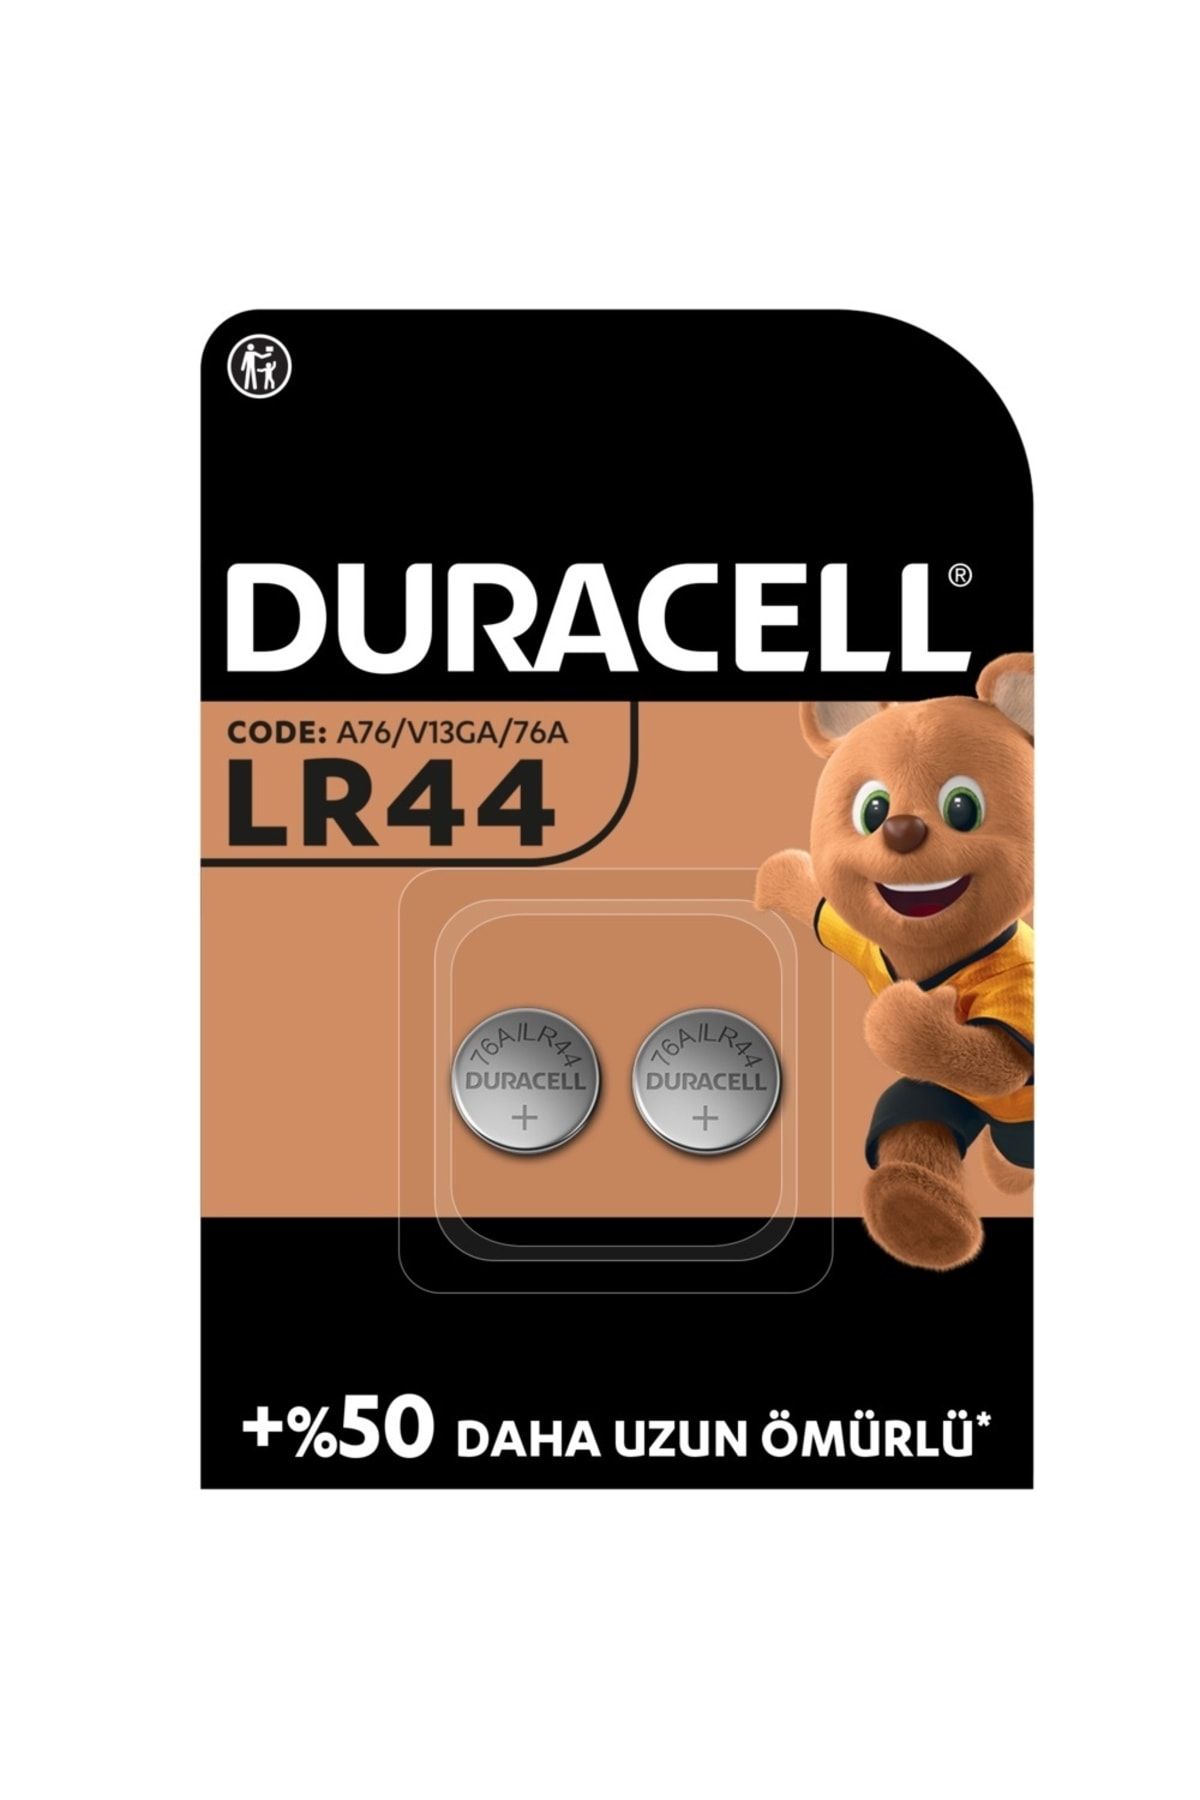 Duracell Özel Alkalin Lr44 Düğme Pil 1,5v (76a / A76 / V13ga)